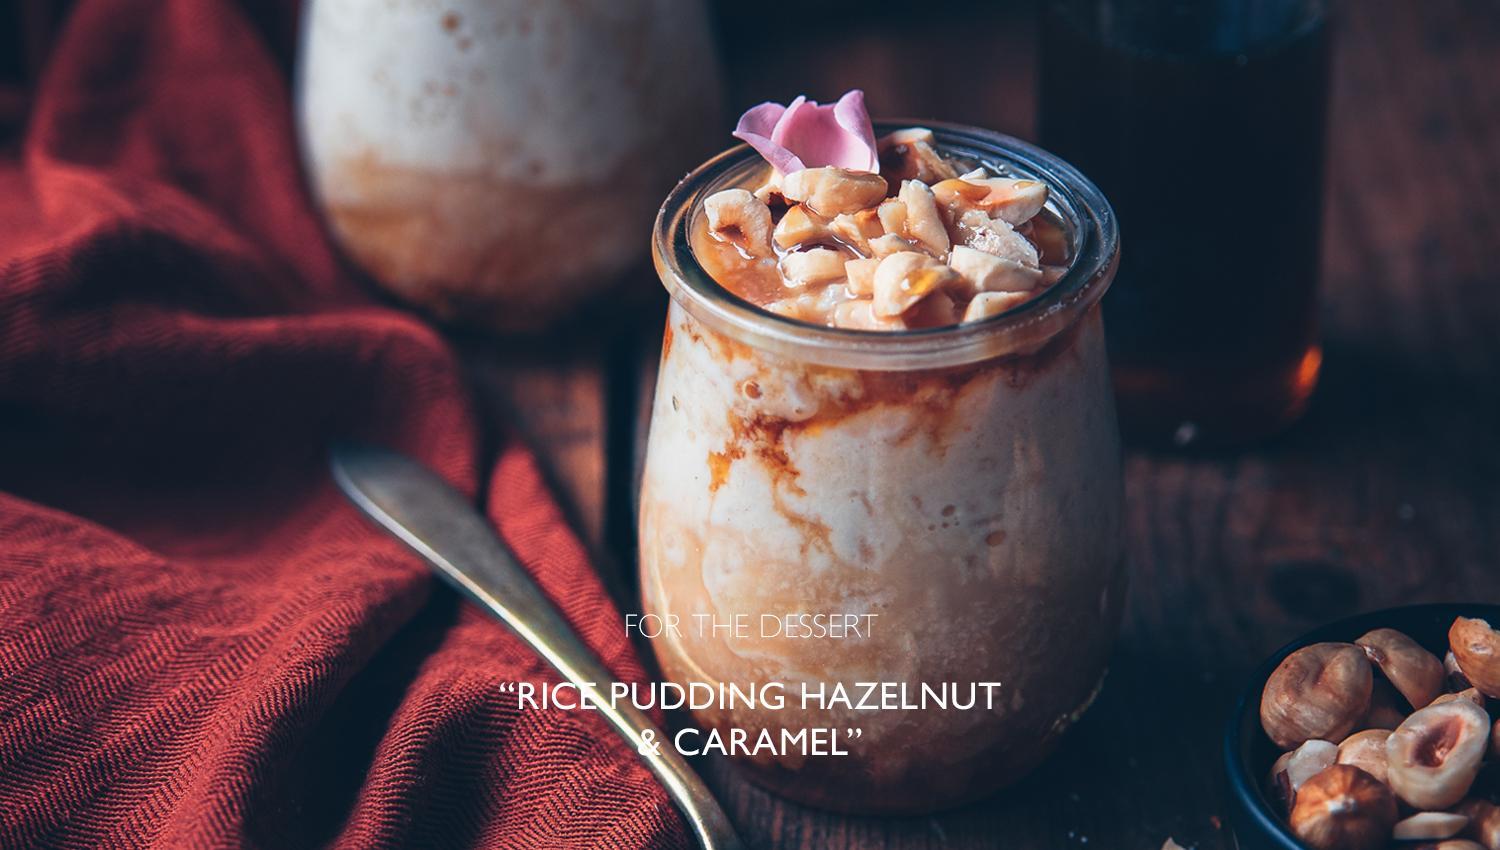 rice pudding hazelnut and caramel